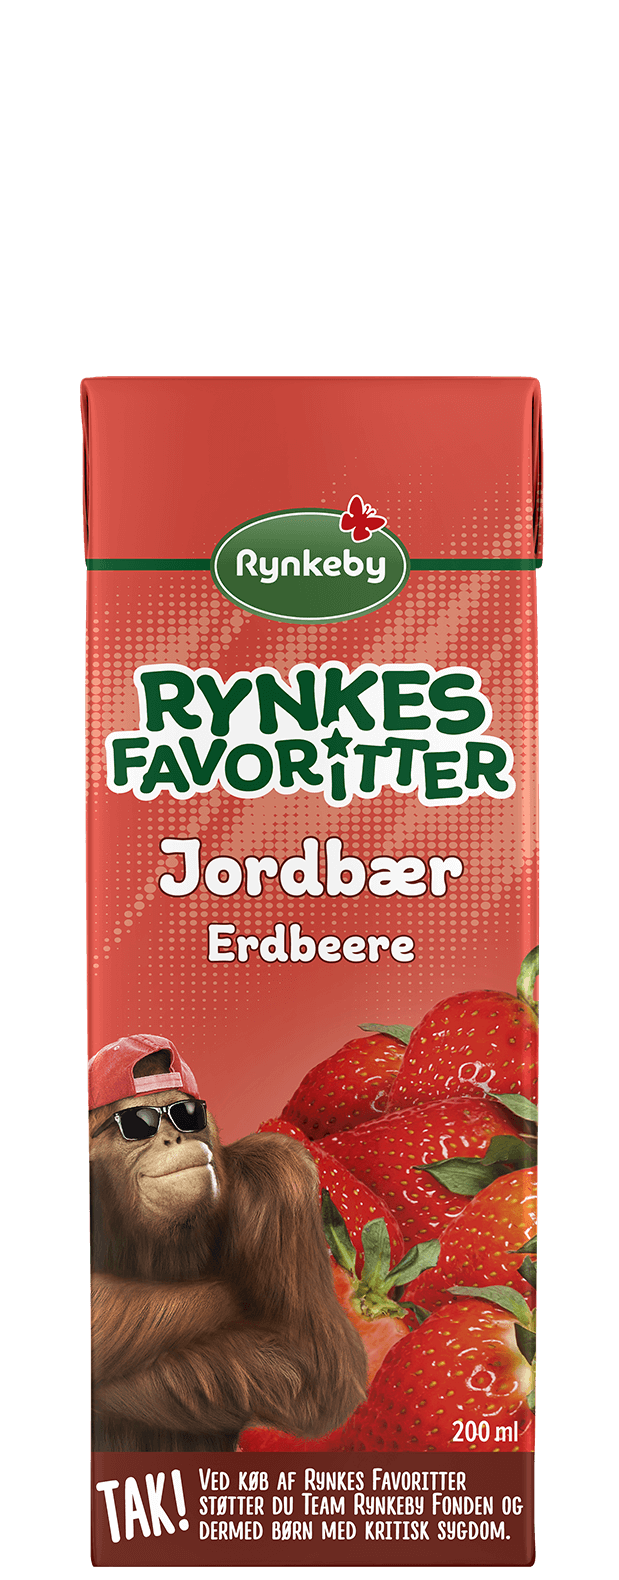 Rynkes Favoritter Jordbær Frugtdrik